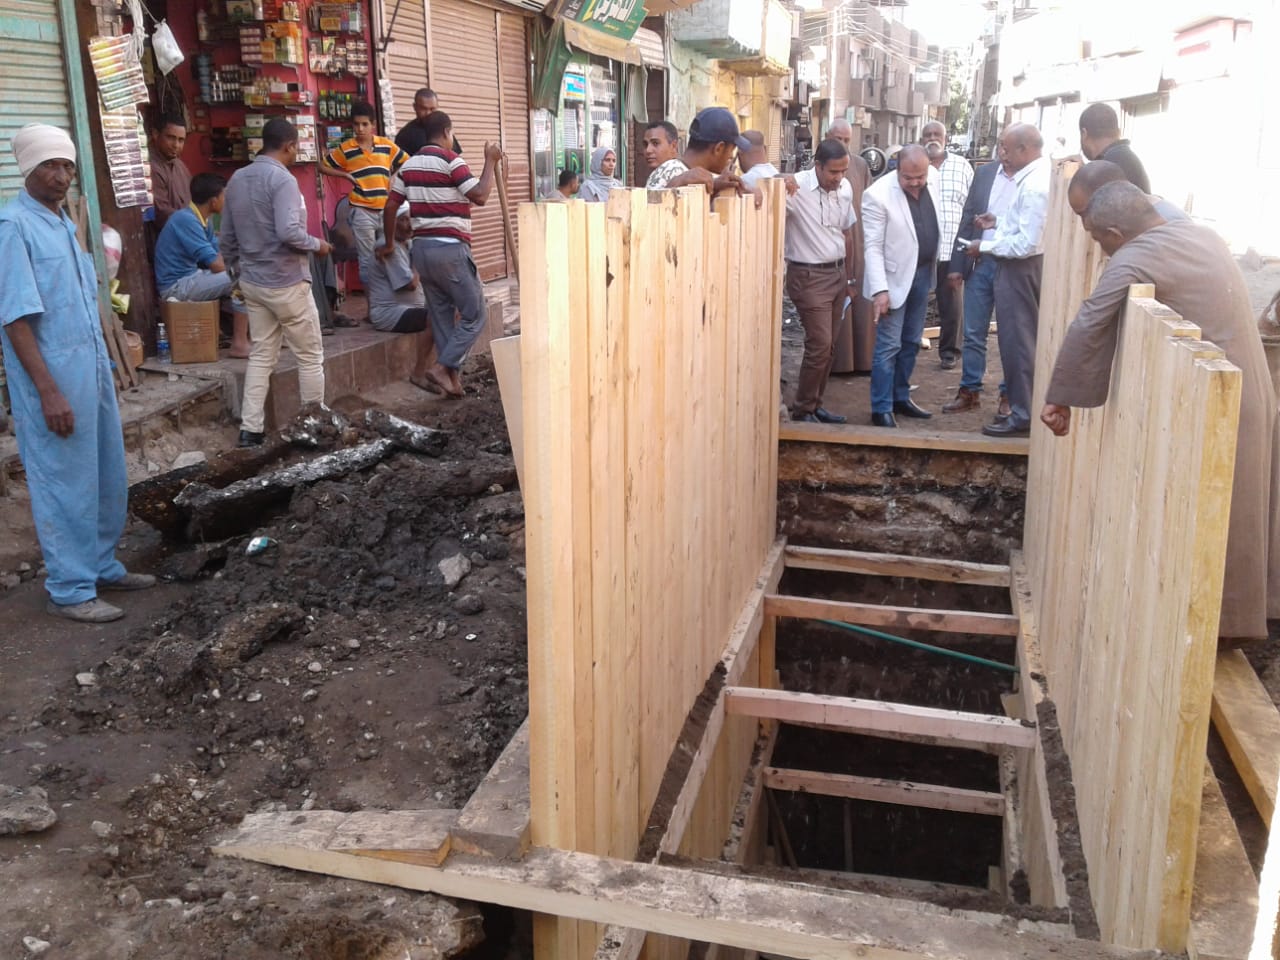 شاهد أعمال إصلاح هبوط مطابق الصرف الصحي بشارع الزلفي بأرمنت الحيط غرب الأقصر (2)